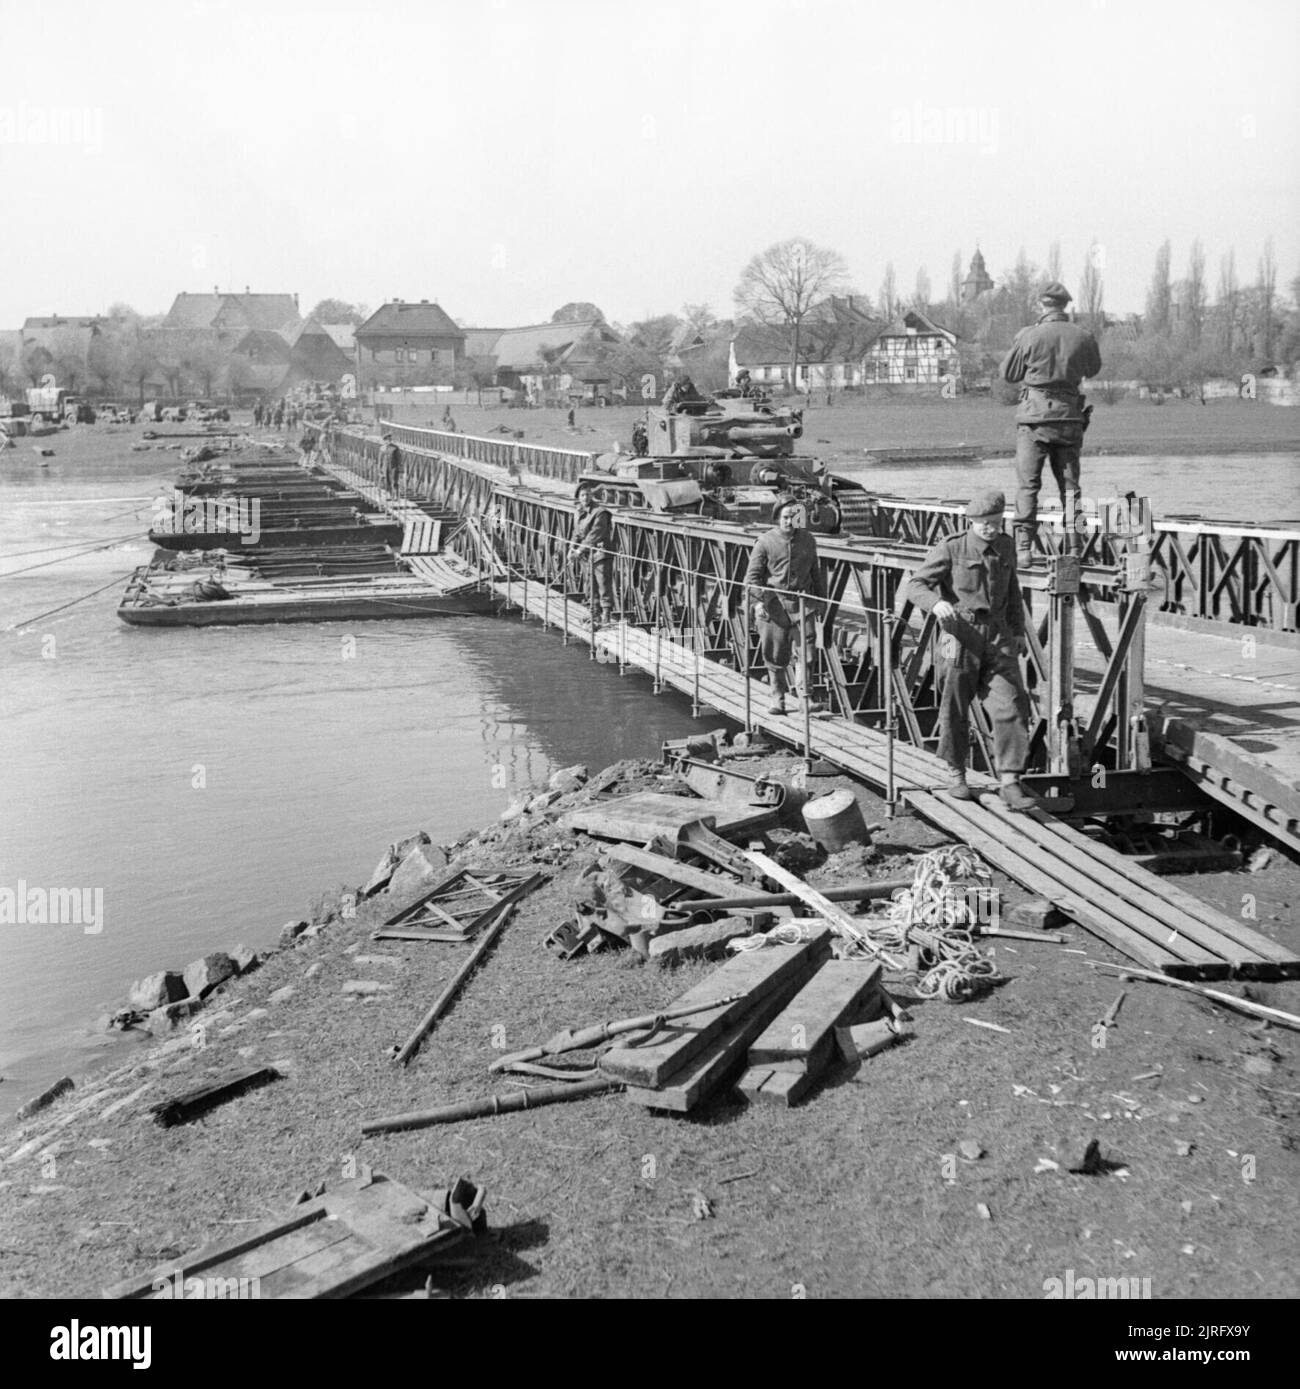 El ejército británico en el norte de Europa occidental 1944-45 Comet de tanques del 2º Fife and Forfar Yeomanry, 11ª División Acorazada, cruzando el Weser en Petershagen, el 7 de abril de 1945. Foto de stock